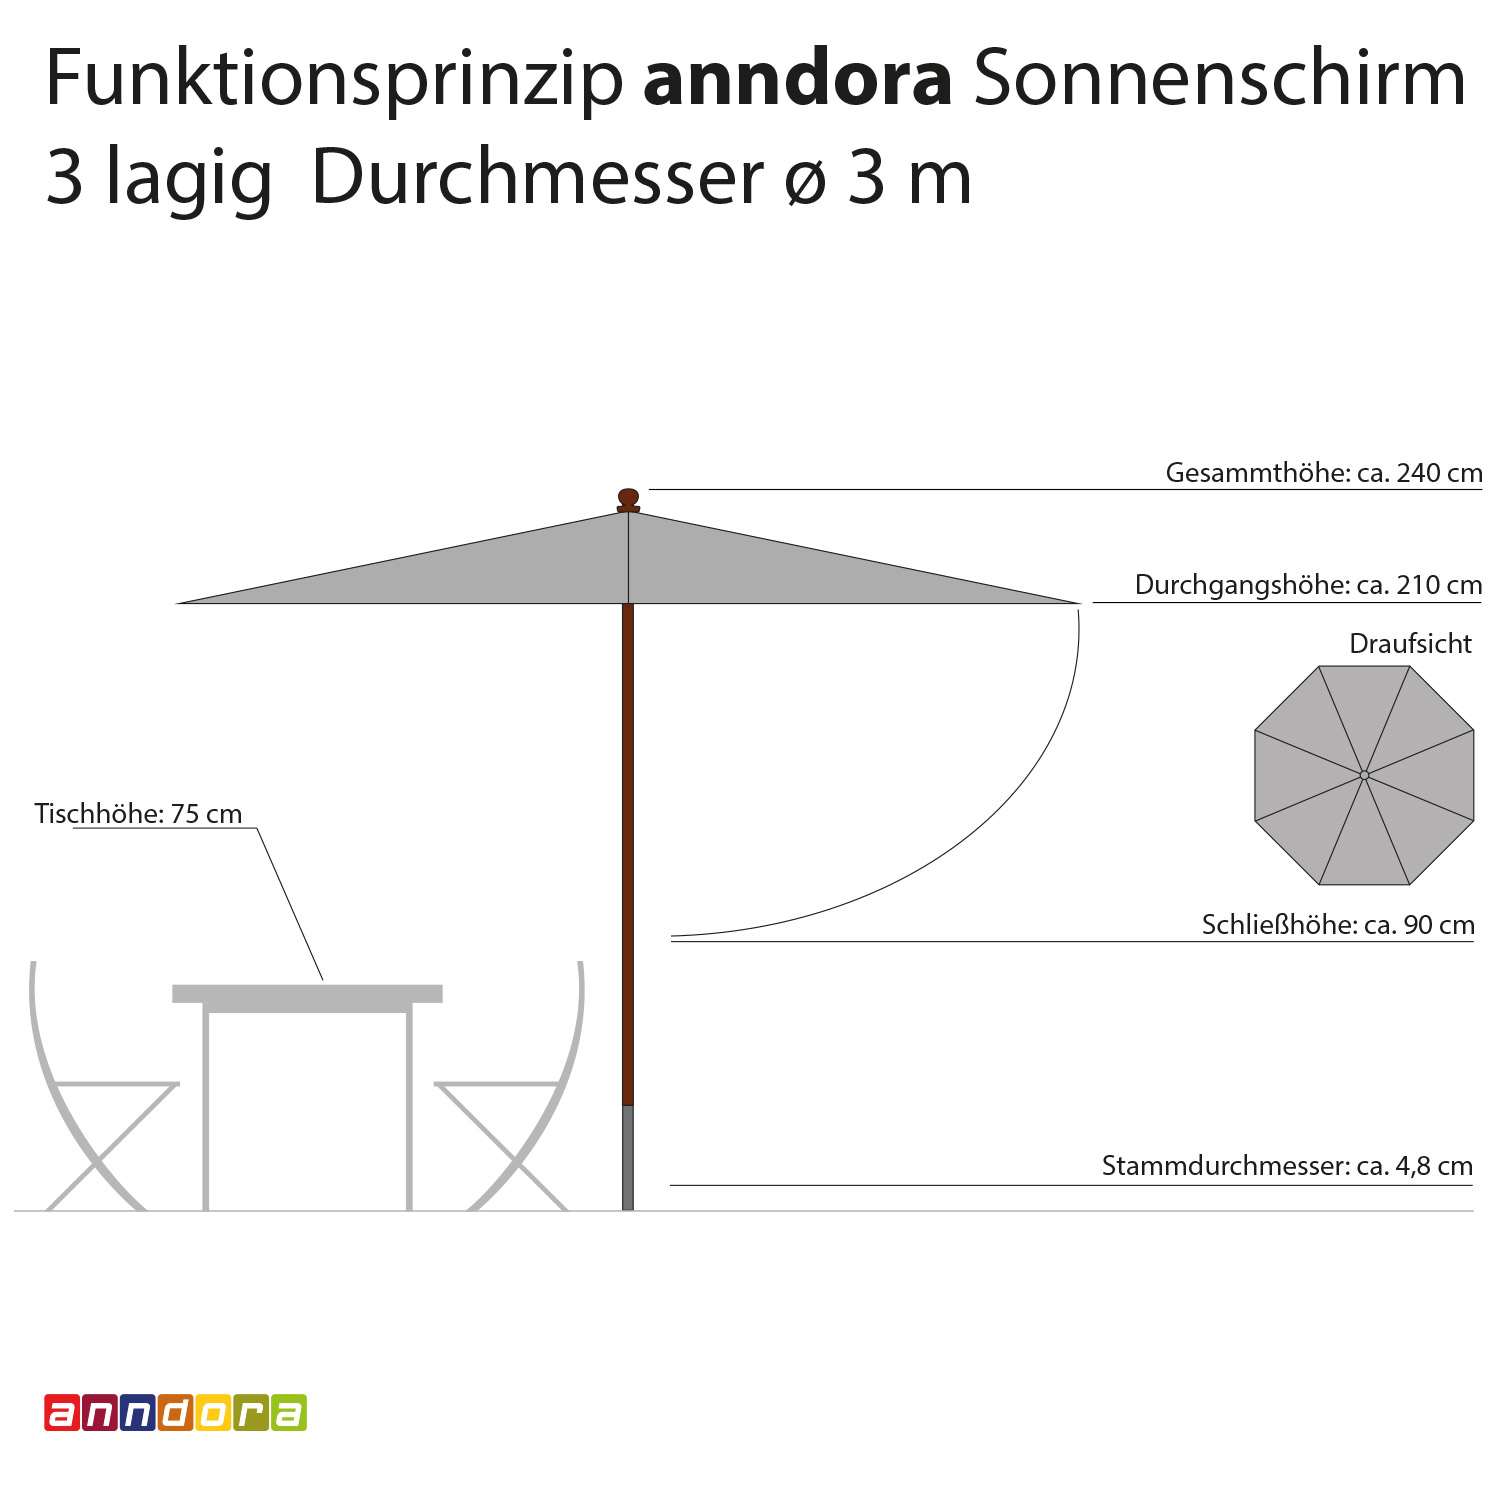 anndora Sonnenschirm 3m rund 3-lagig Natural UV-Schutz - 4